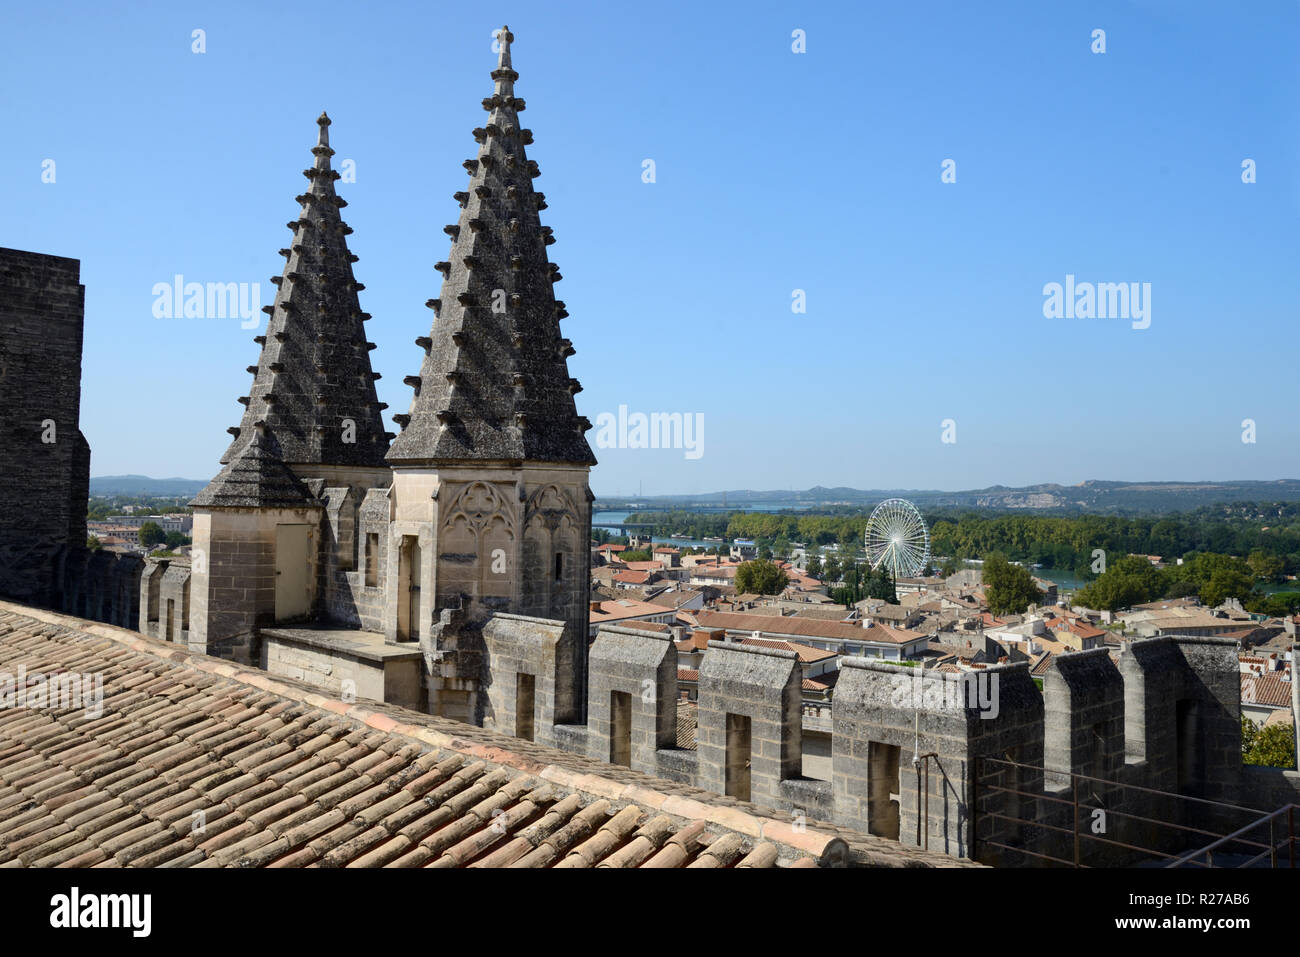 Pinacles gothiques sur les toits du Palais des Papes, le Palais des Papes ou le Palais des Papes et vue panoramique sur Avignon Provence France Banque D'Images